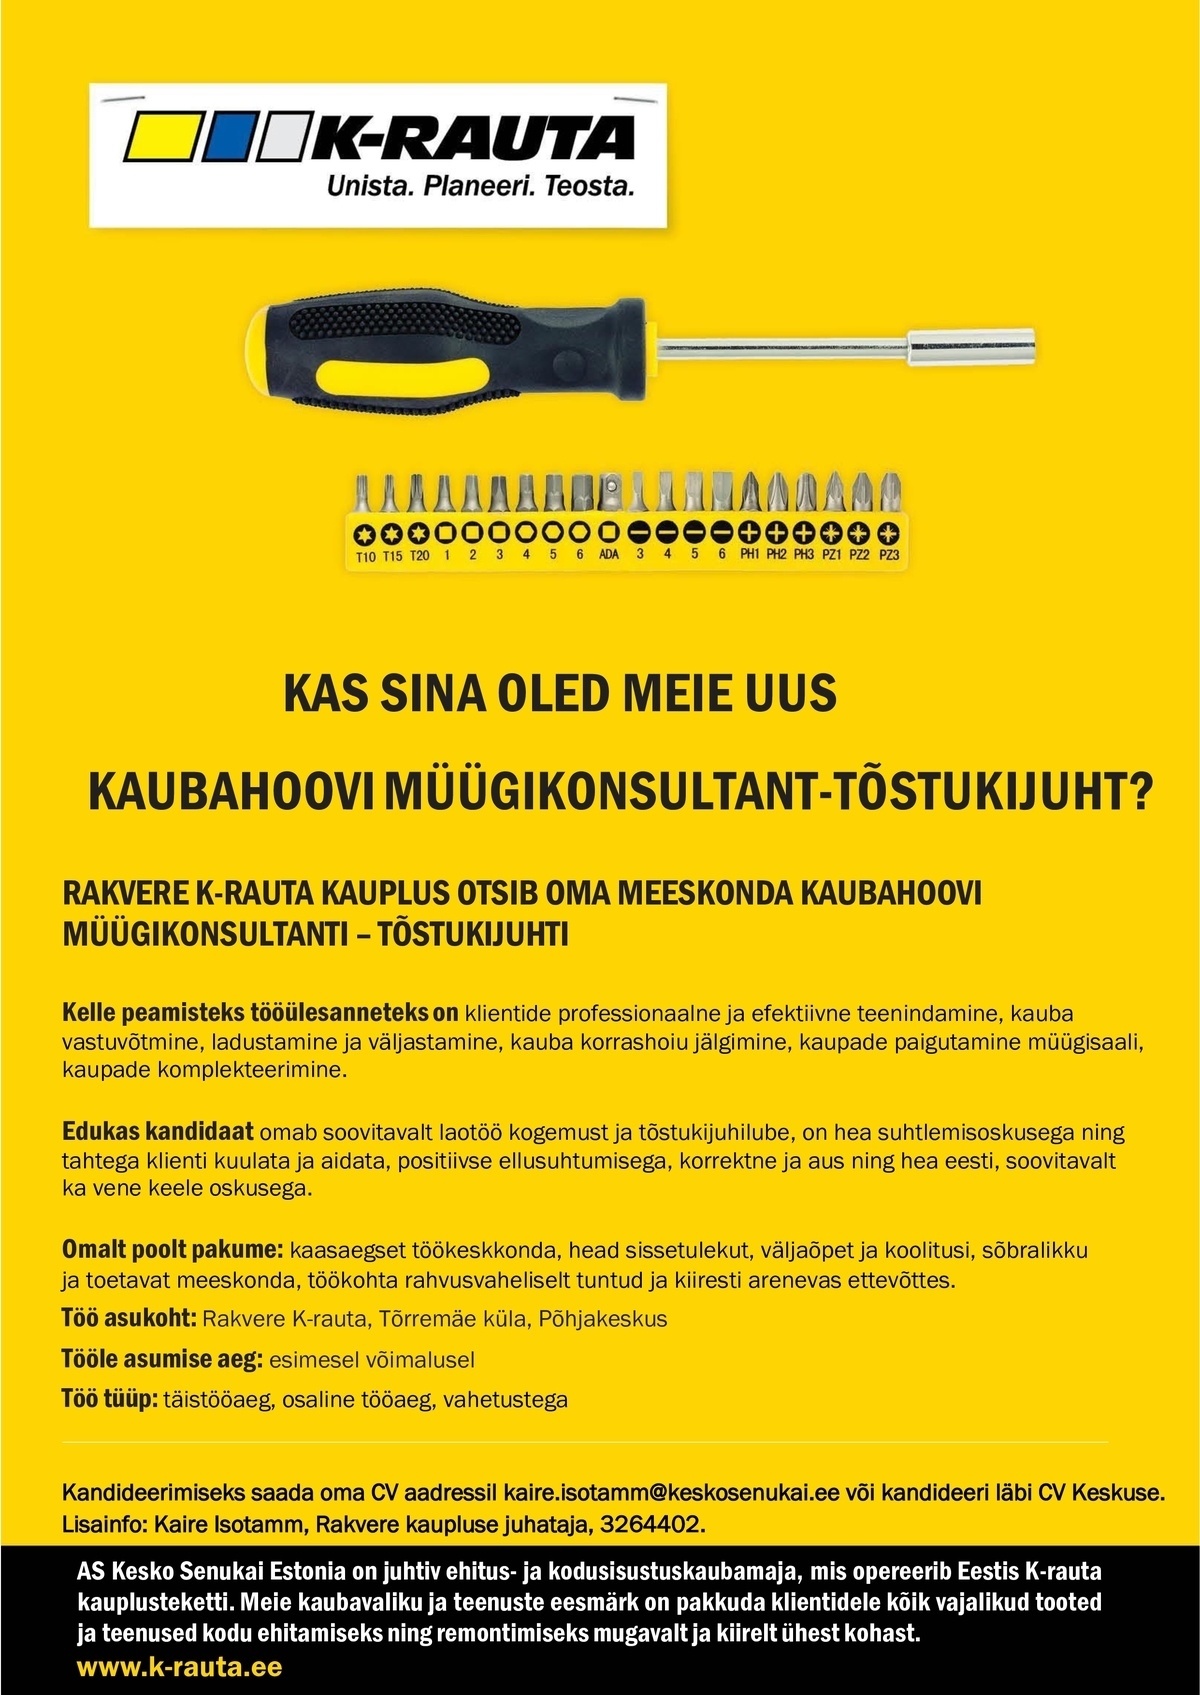 AS Kesko Senukai Estonia Kaubahoovi müügikonsultant Rakvere K-rauta kauplusesse